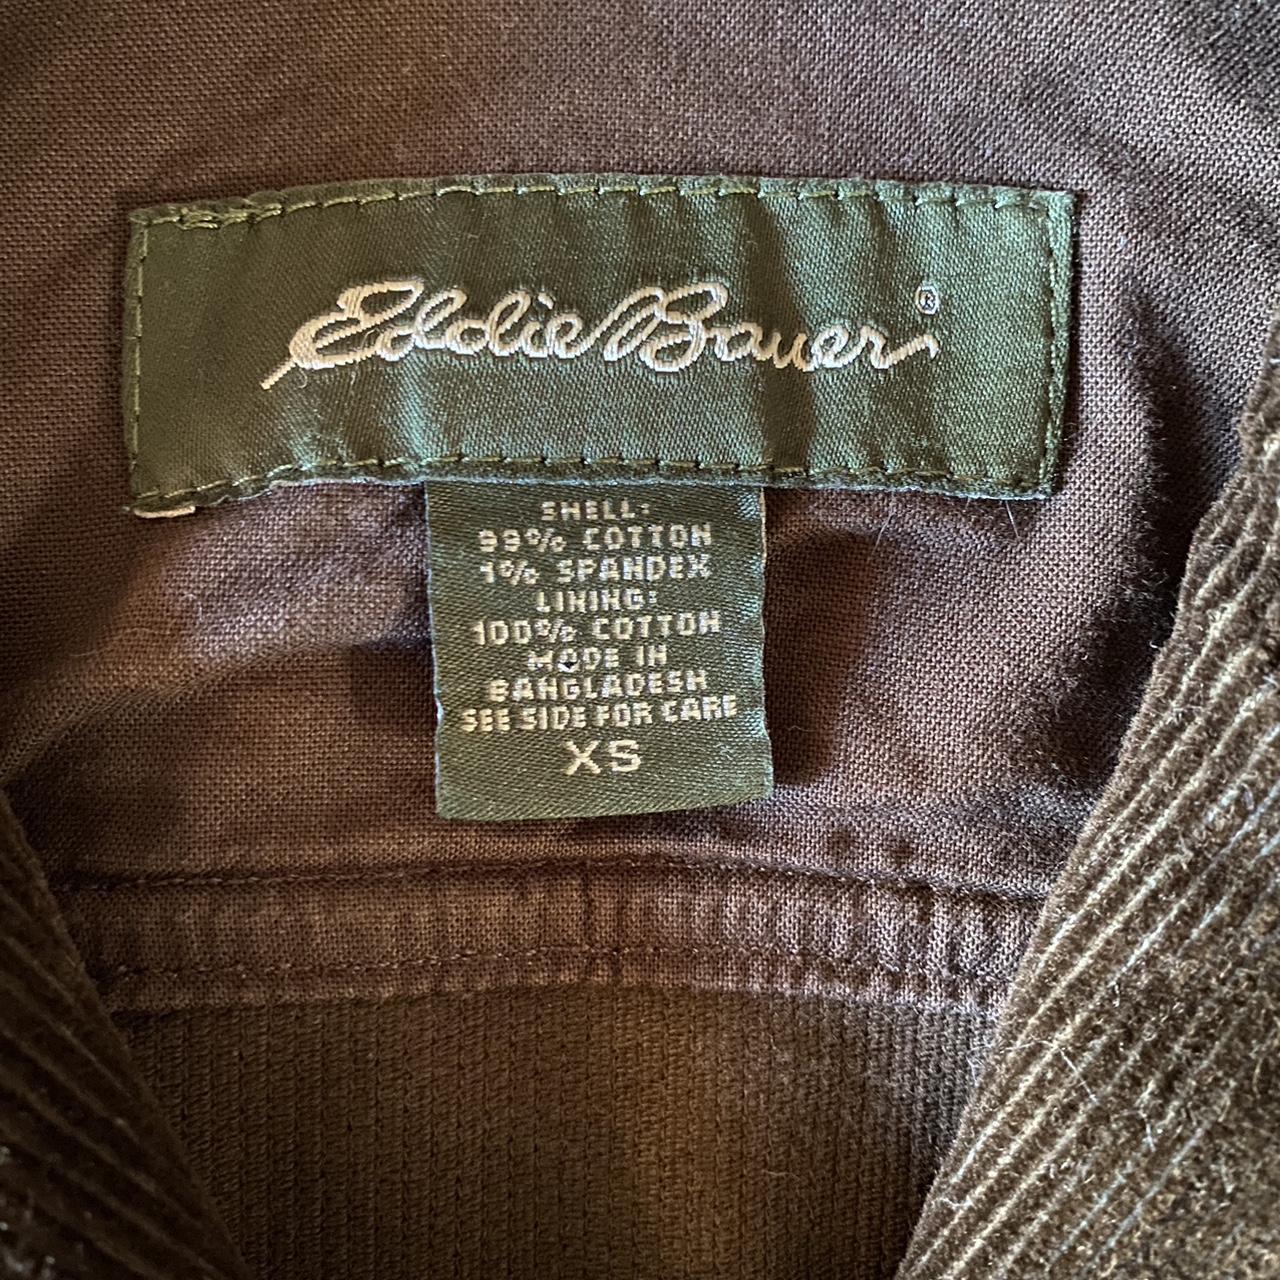 Eddie Bauer 2000s brown corduroy jacket. This dark... - Depop